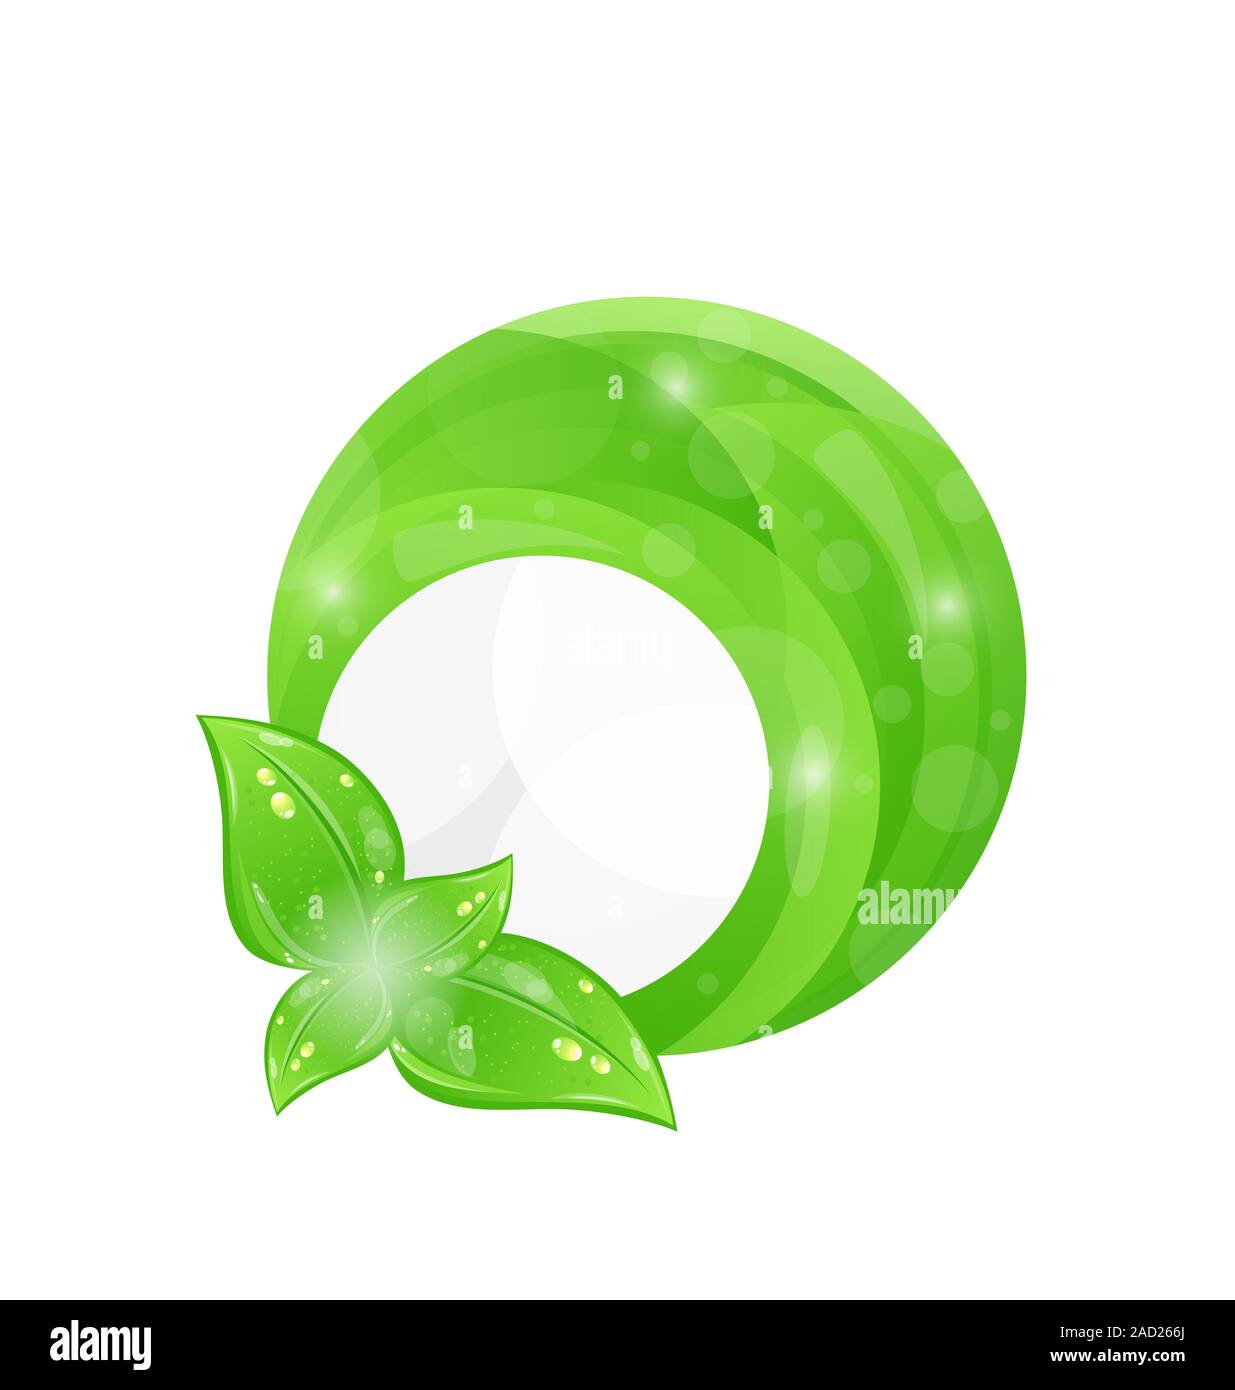 Cadre rond vert avec les éléments leaf, eco background Banque D'Images